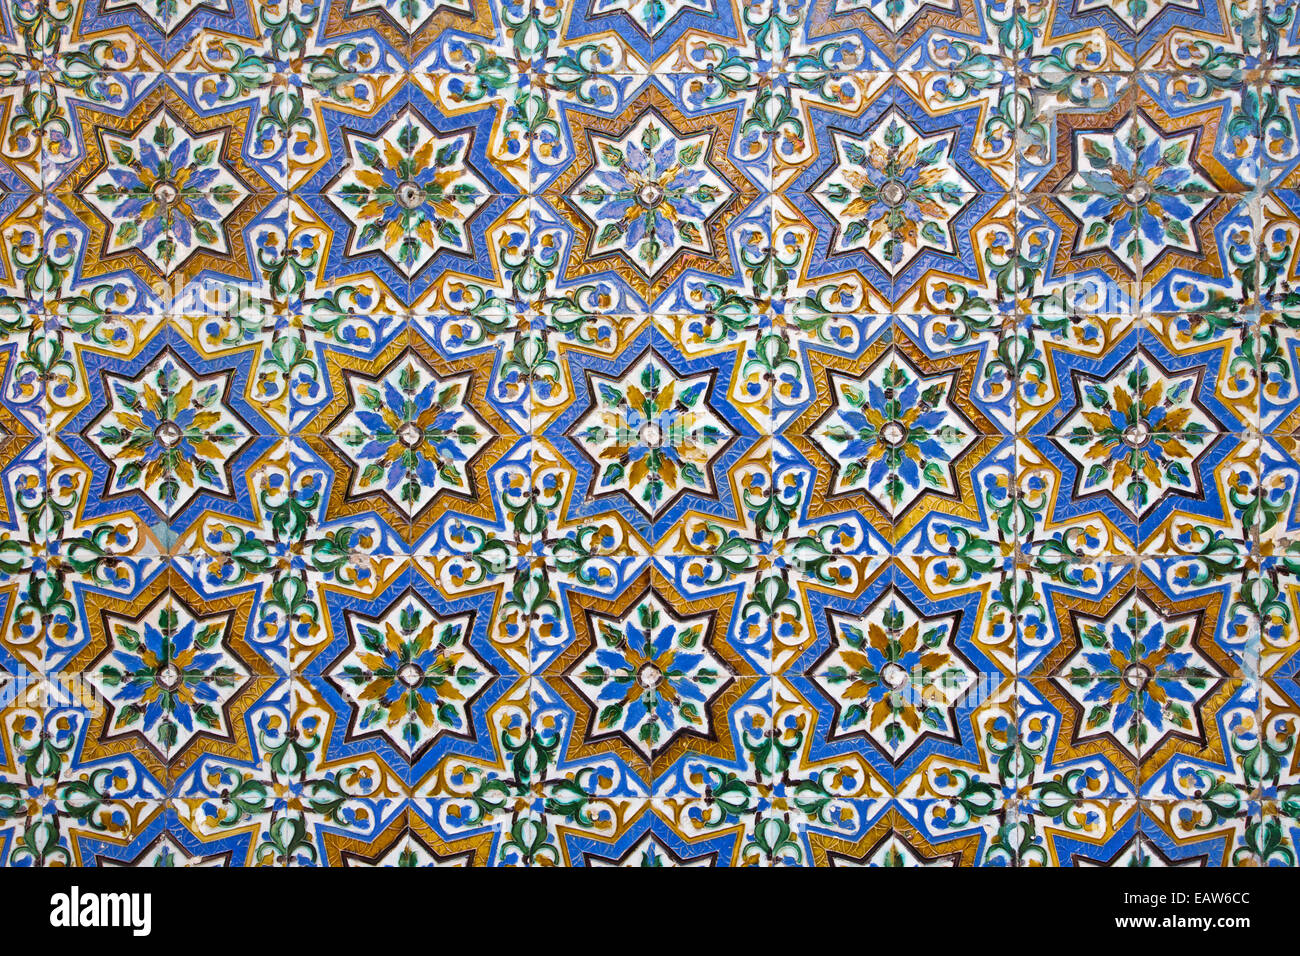 Séville, ESPAGNE - 28 octobre 2014 : Le détail des carreaux de style mudéjar dans la cour de la Casa de Pilatos. Banque D'Images